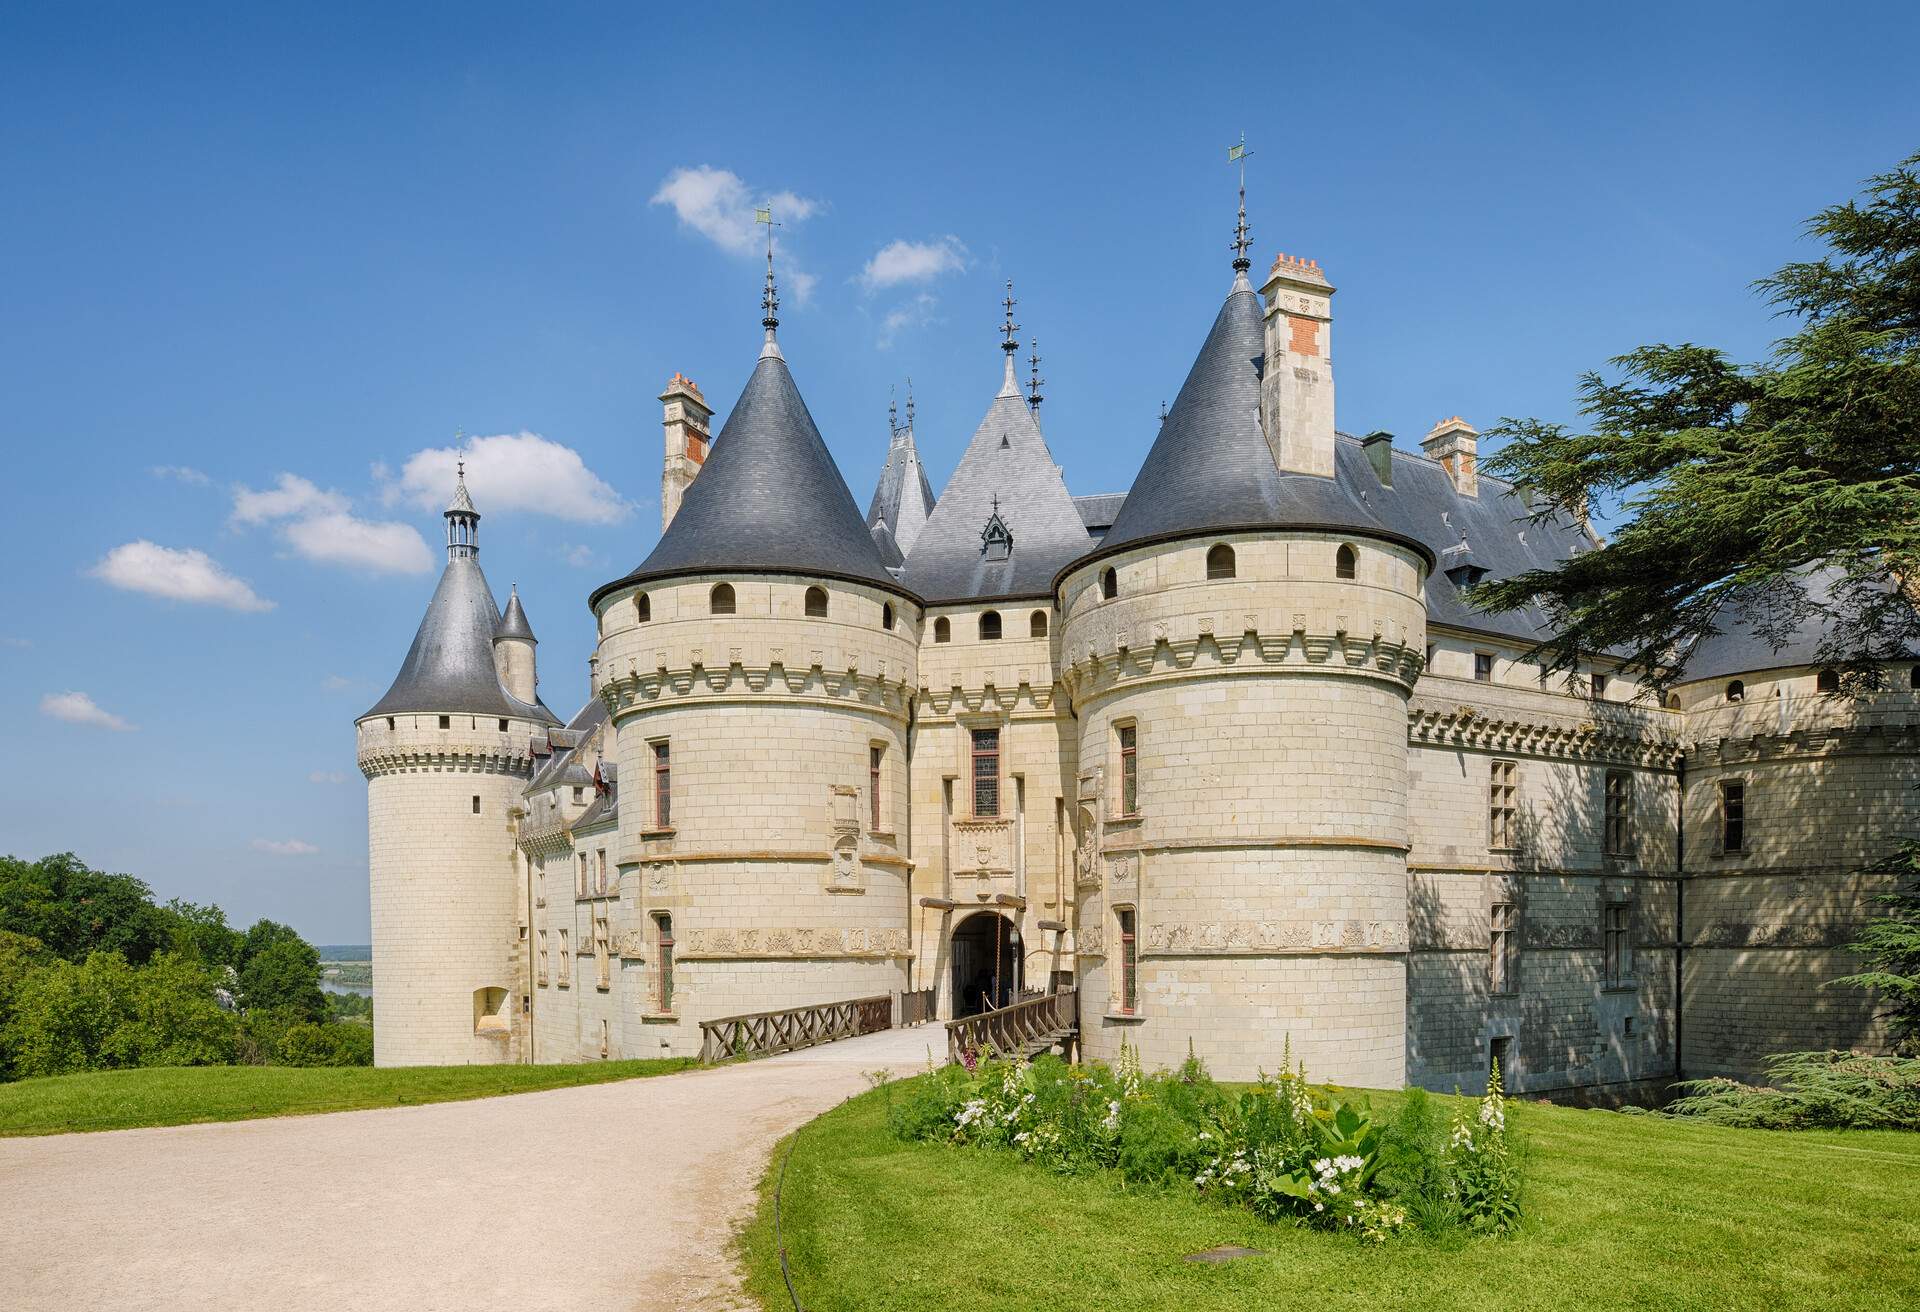 Chateau de Chaumont (Chaumont Castle), Renaissance architecture. Chateau de Chaumont, Chaumont Castle, Chaumont-sur-Loire, Loir-et-Cher (Department), Loire, Loire Valley, France.